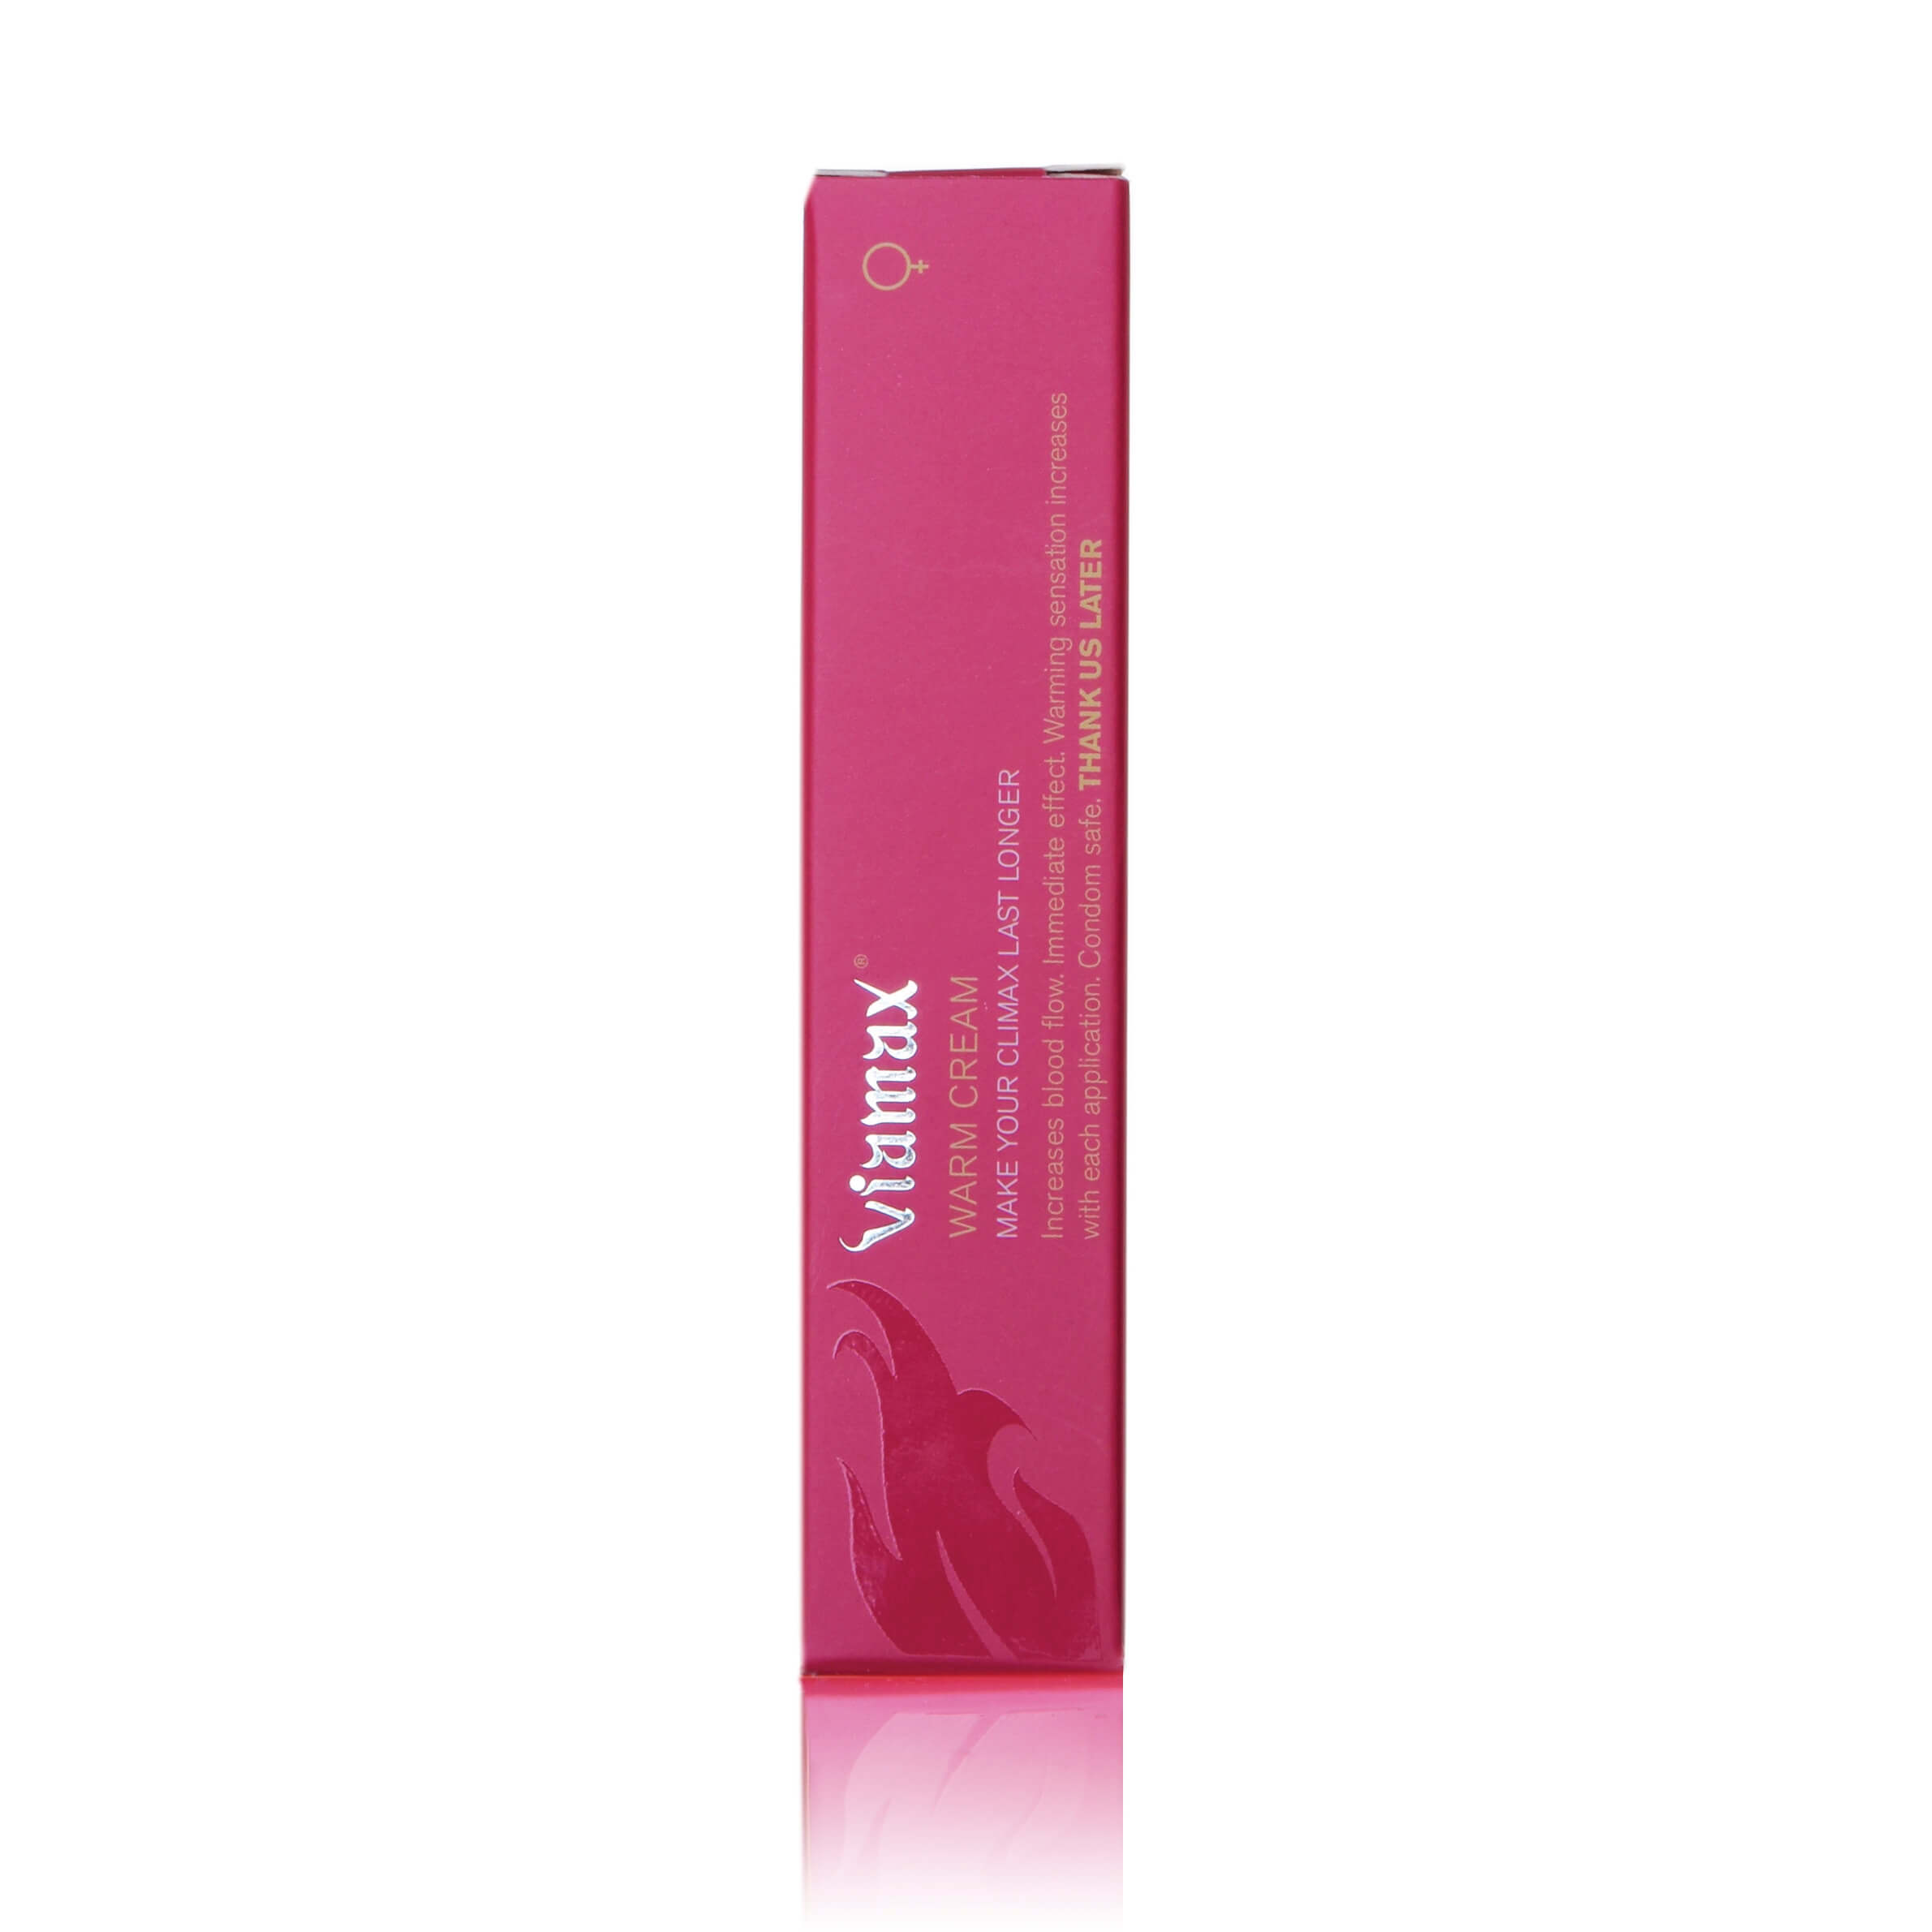 Viamax Warm - melegítős intim krém nőknek (15 ml) Stimulálók kép